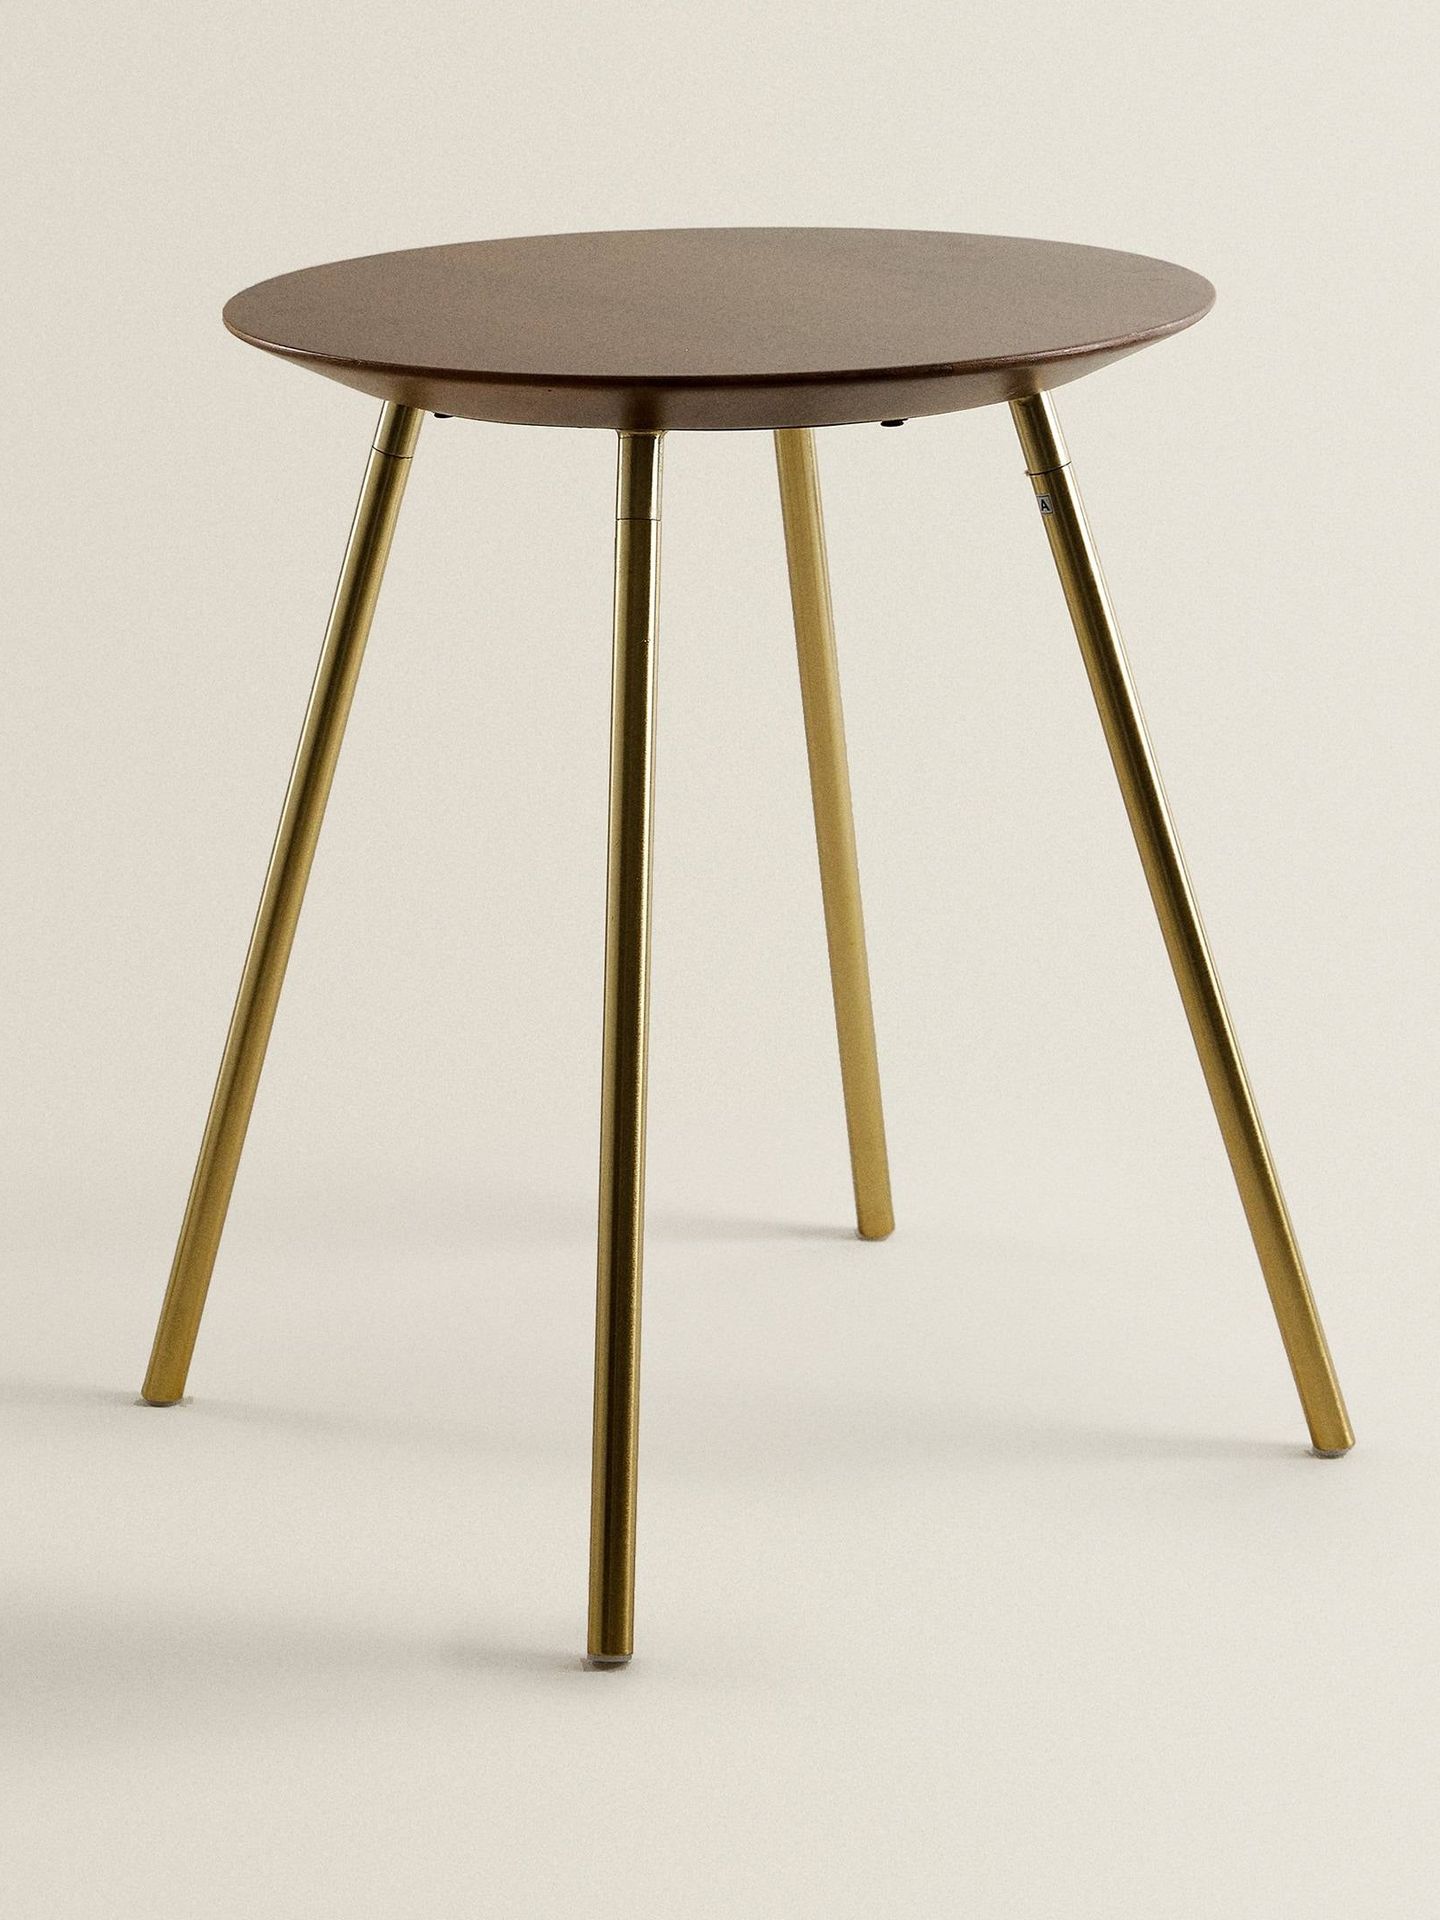 Zara Home tiene esta preciosa mesa redonda. (Cortesía)